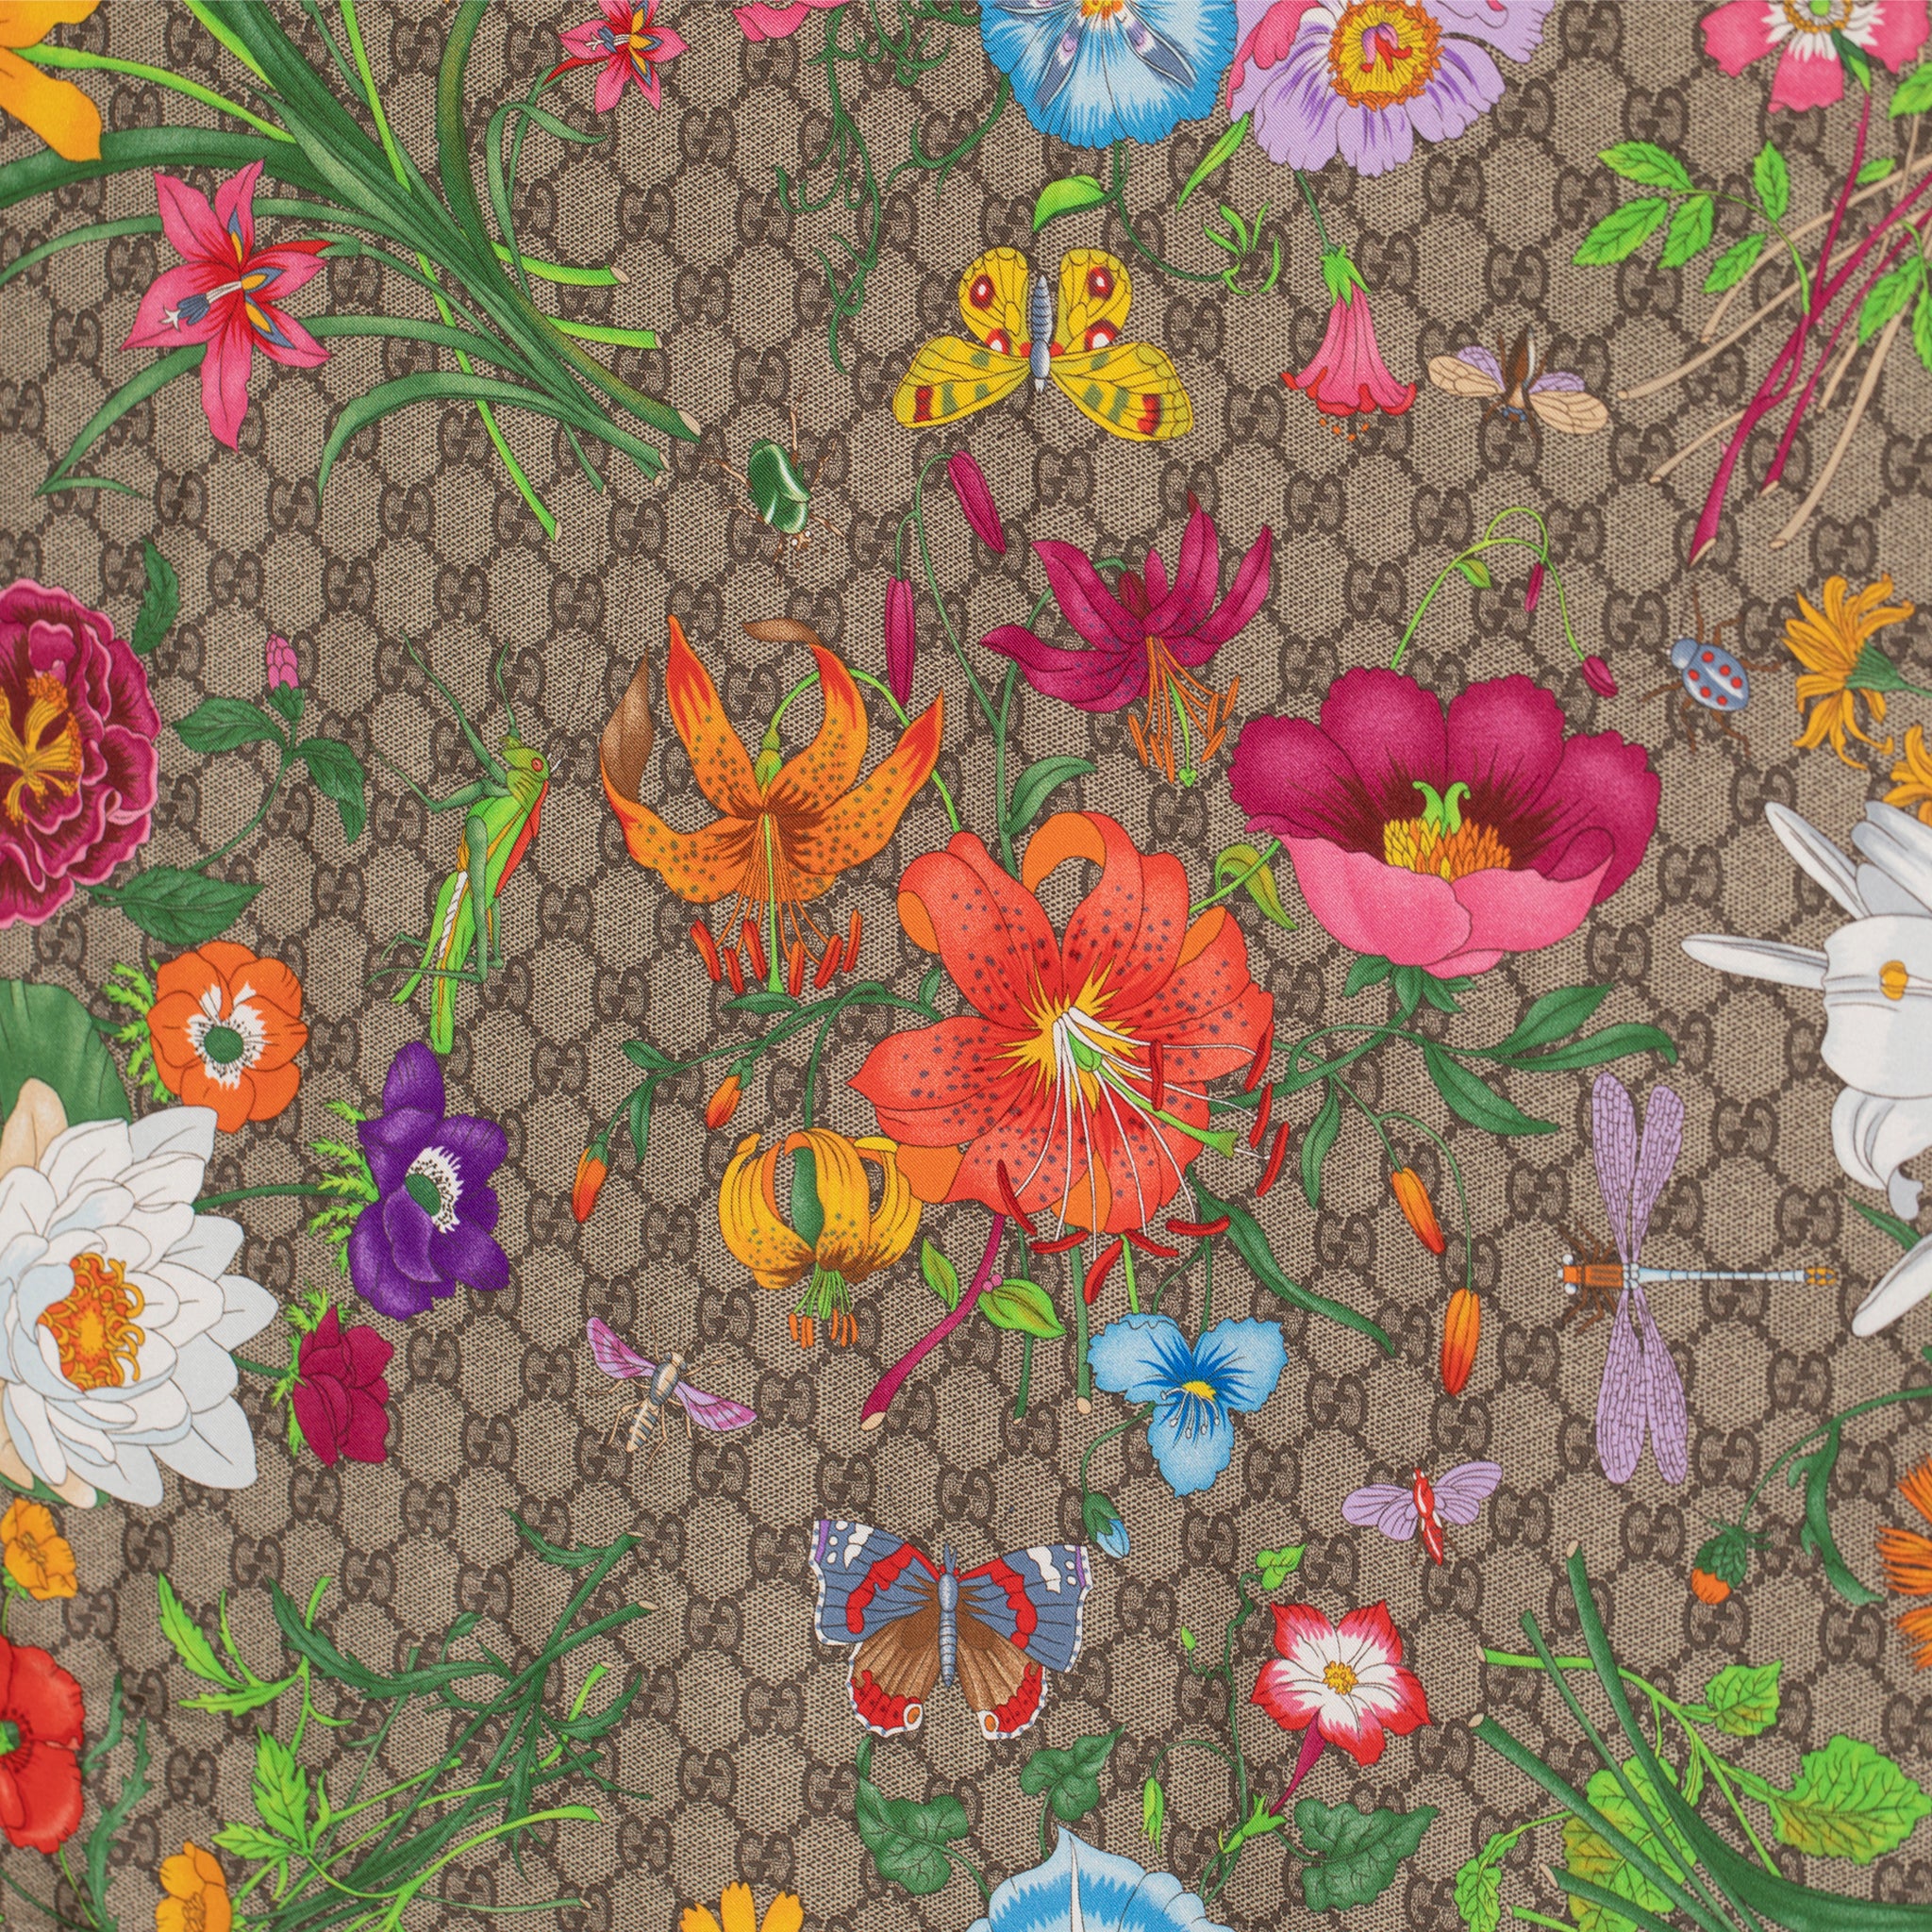 Gucci "Floral" Print Silk Scarf 90 Cm